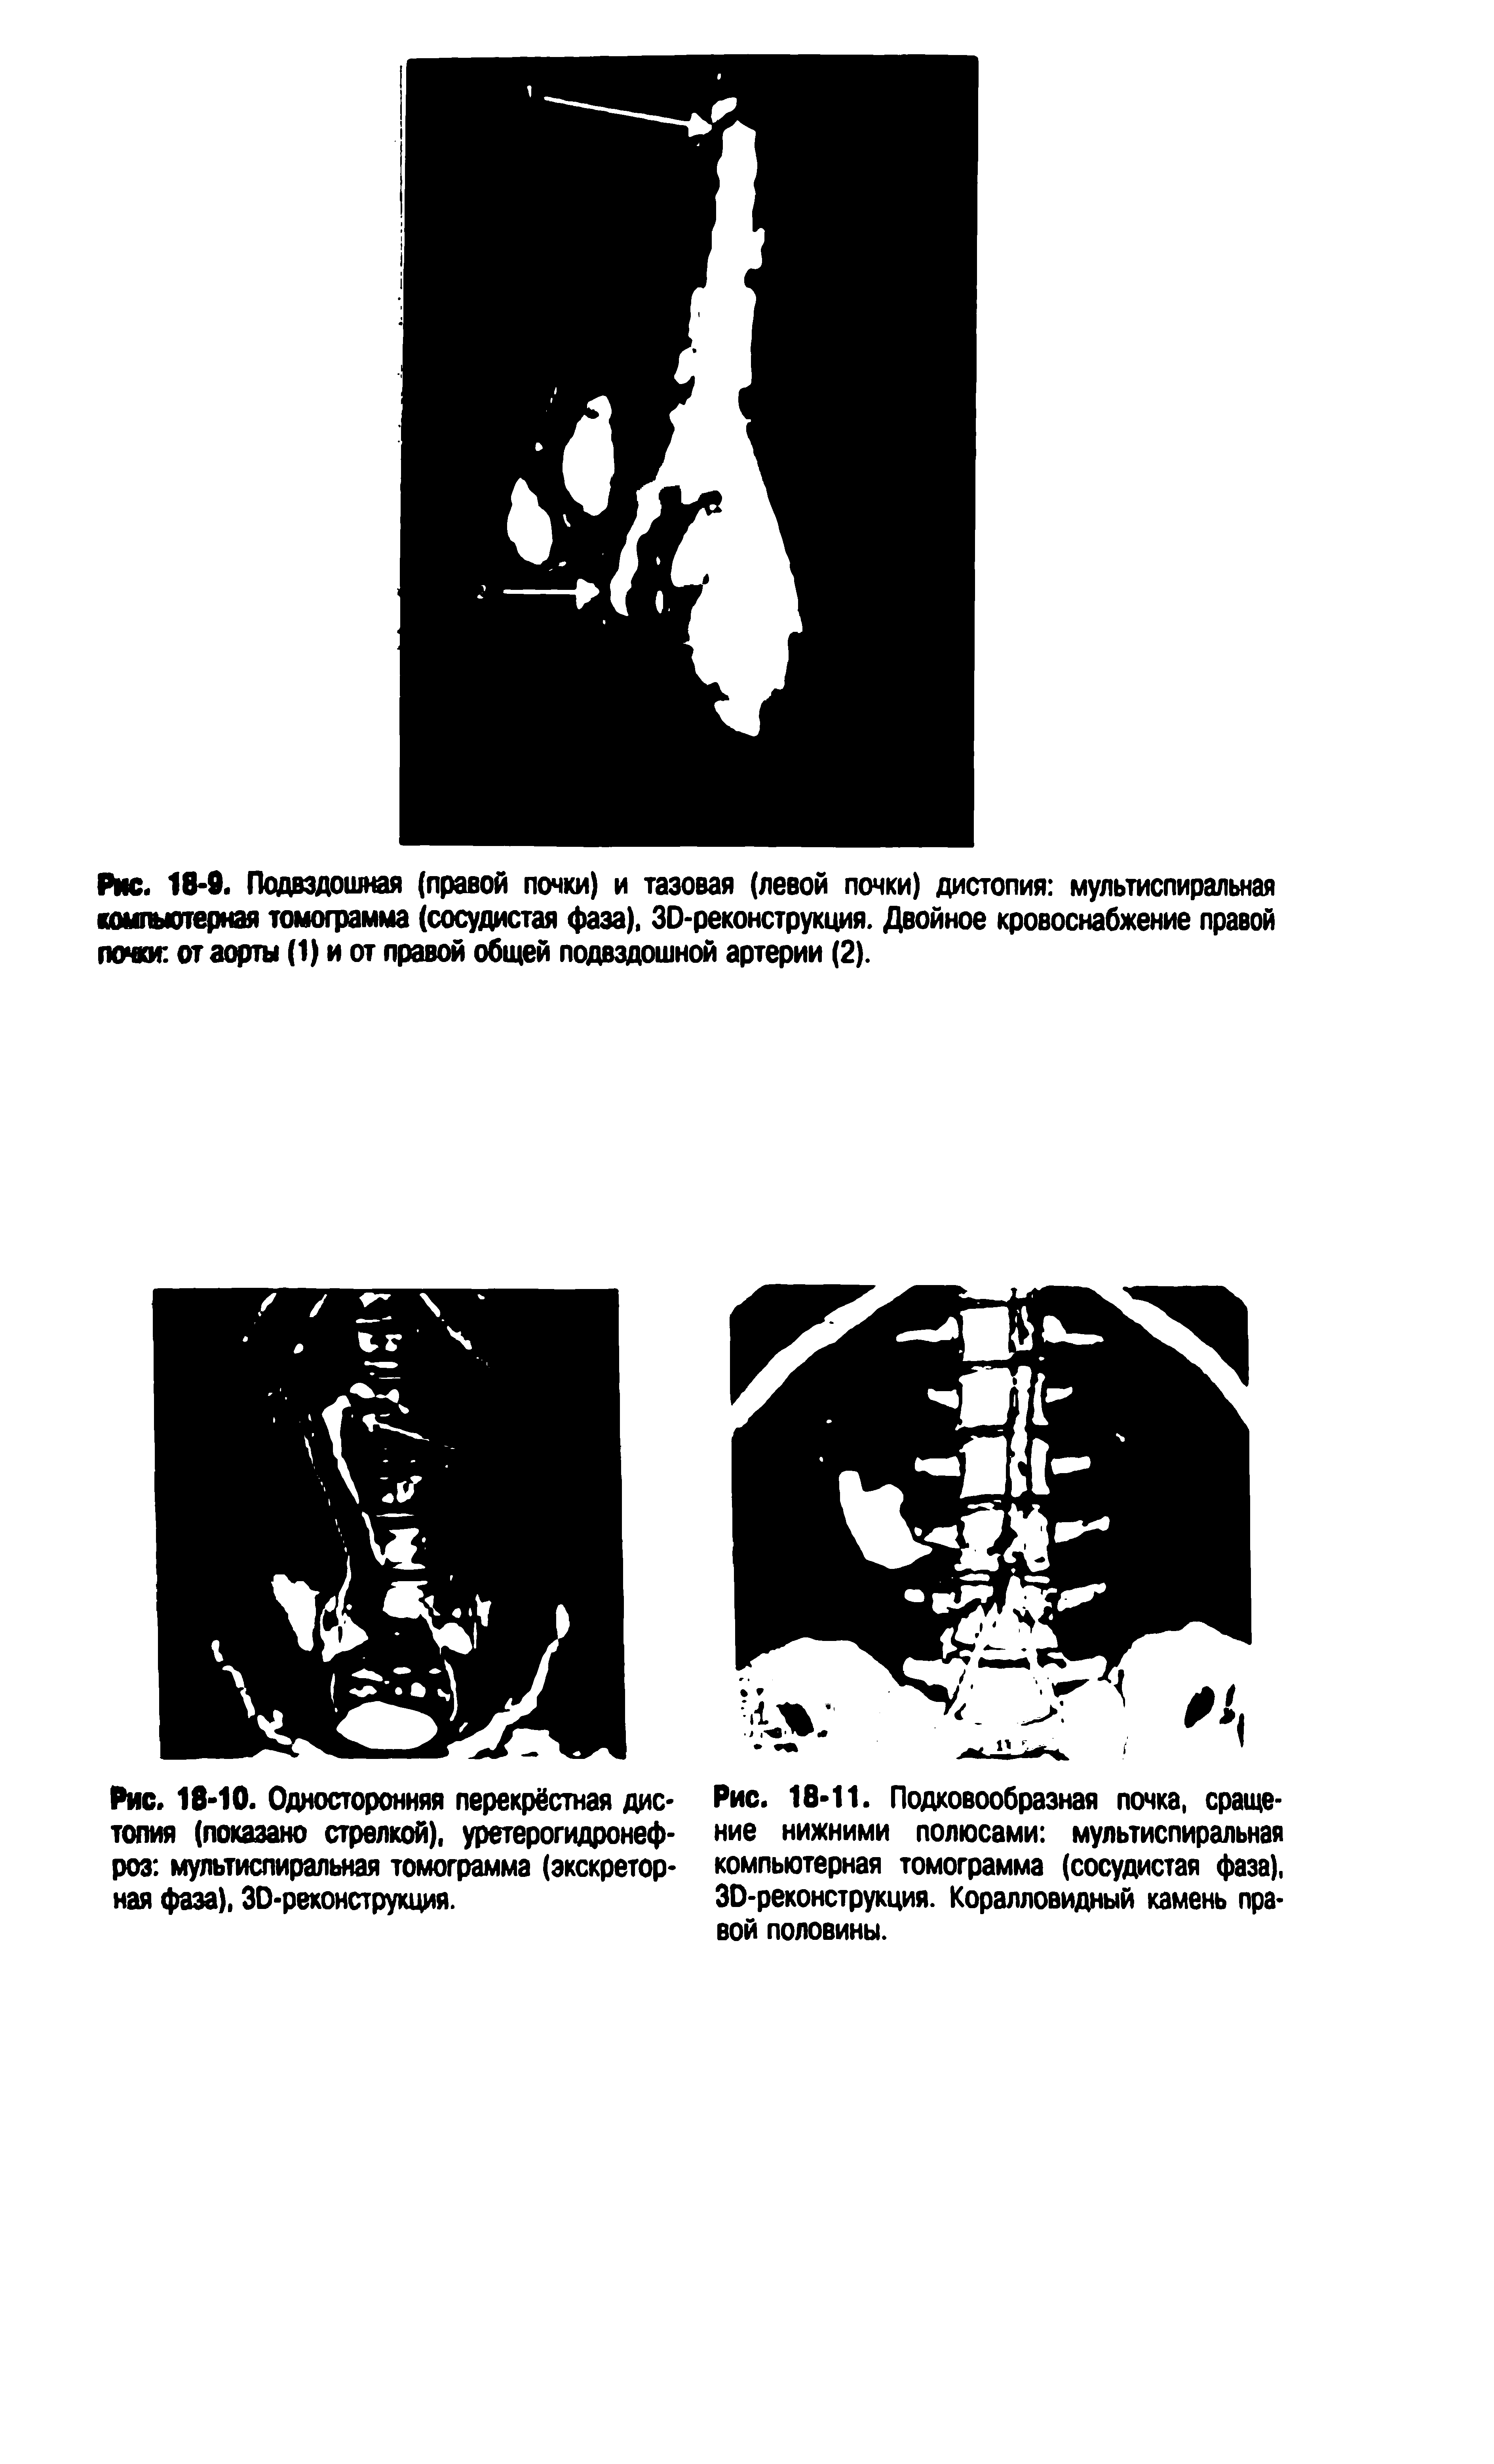 Рис. 18-10. Односторонняя перекрёстная дистопия (показано стрелкой), уретерогидронеф-роз мультиспиральная томограмма (экскреторная фаза). ЗО-реконструкция.